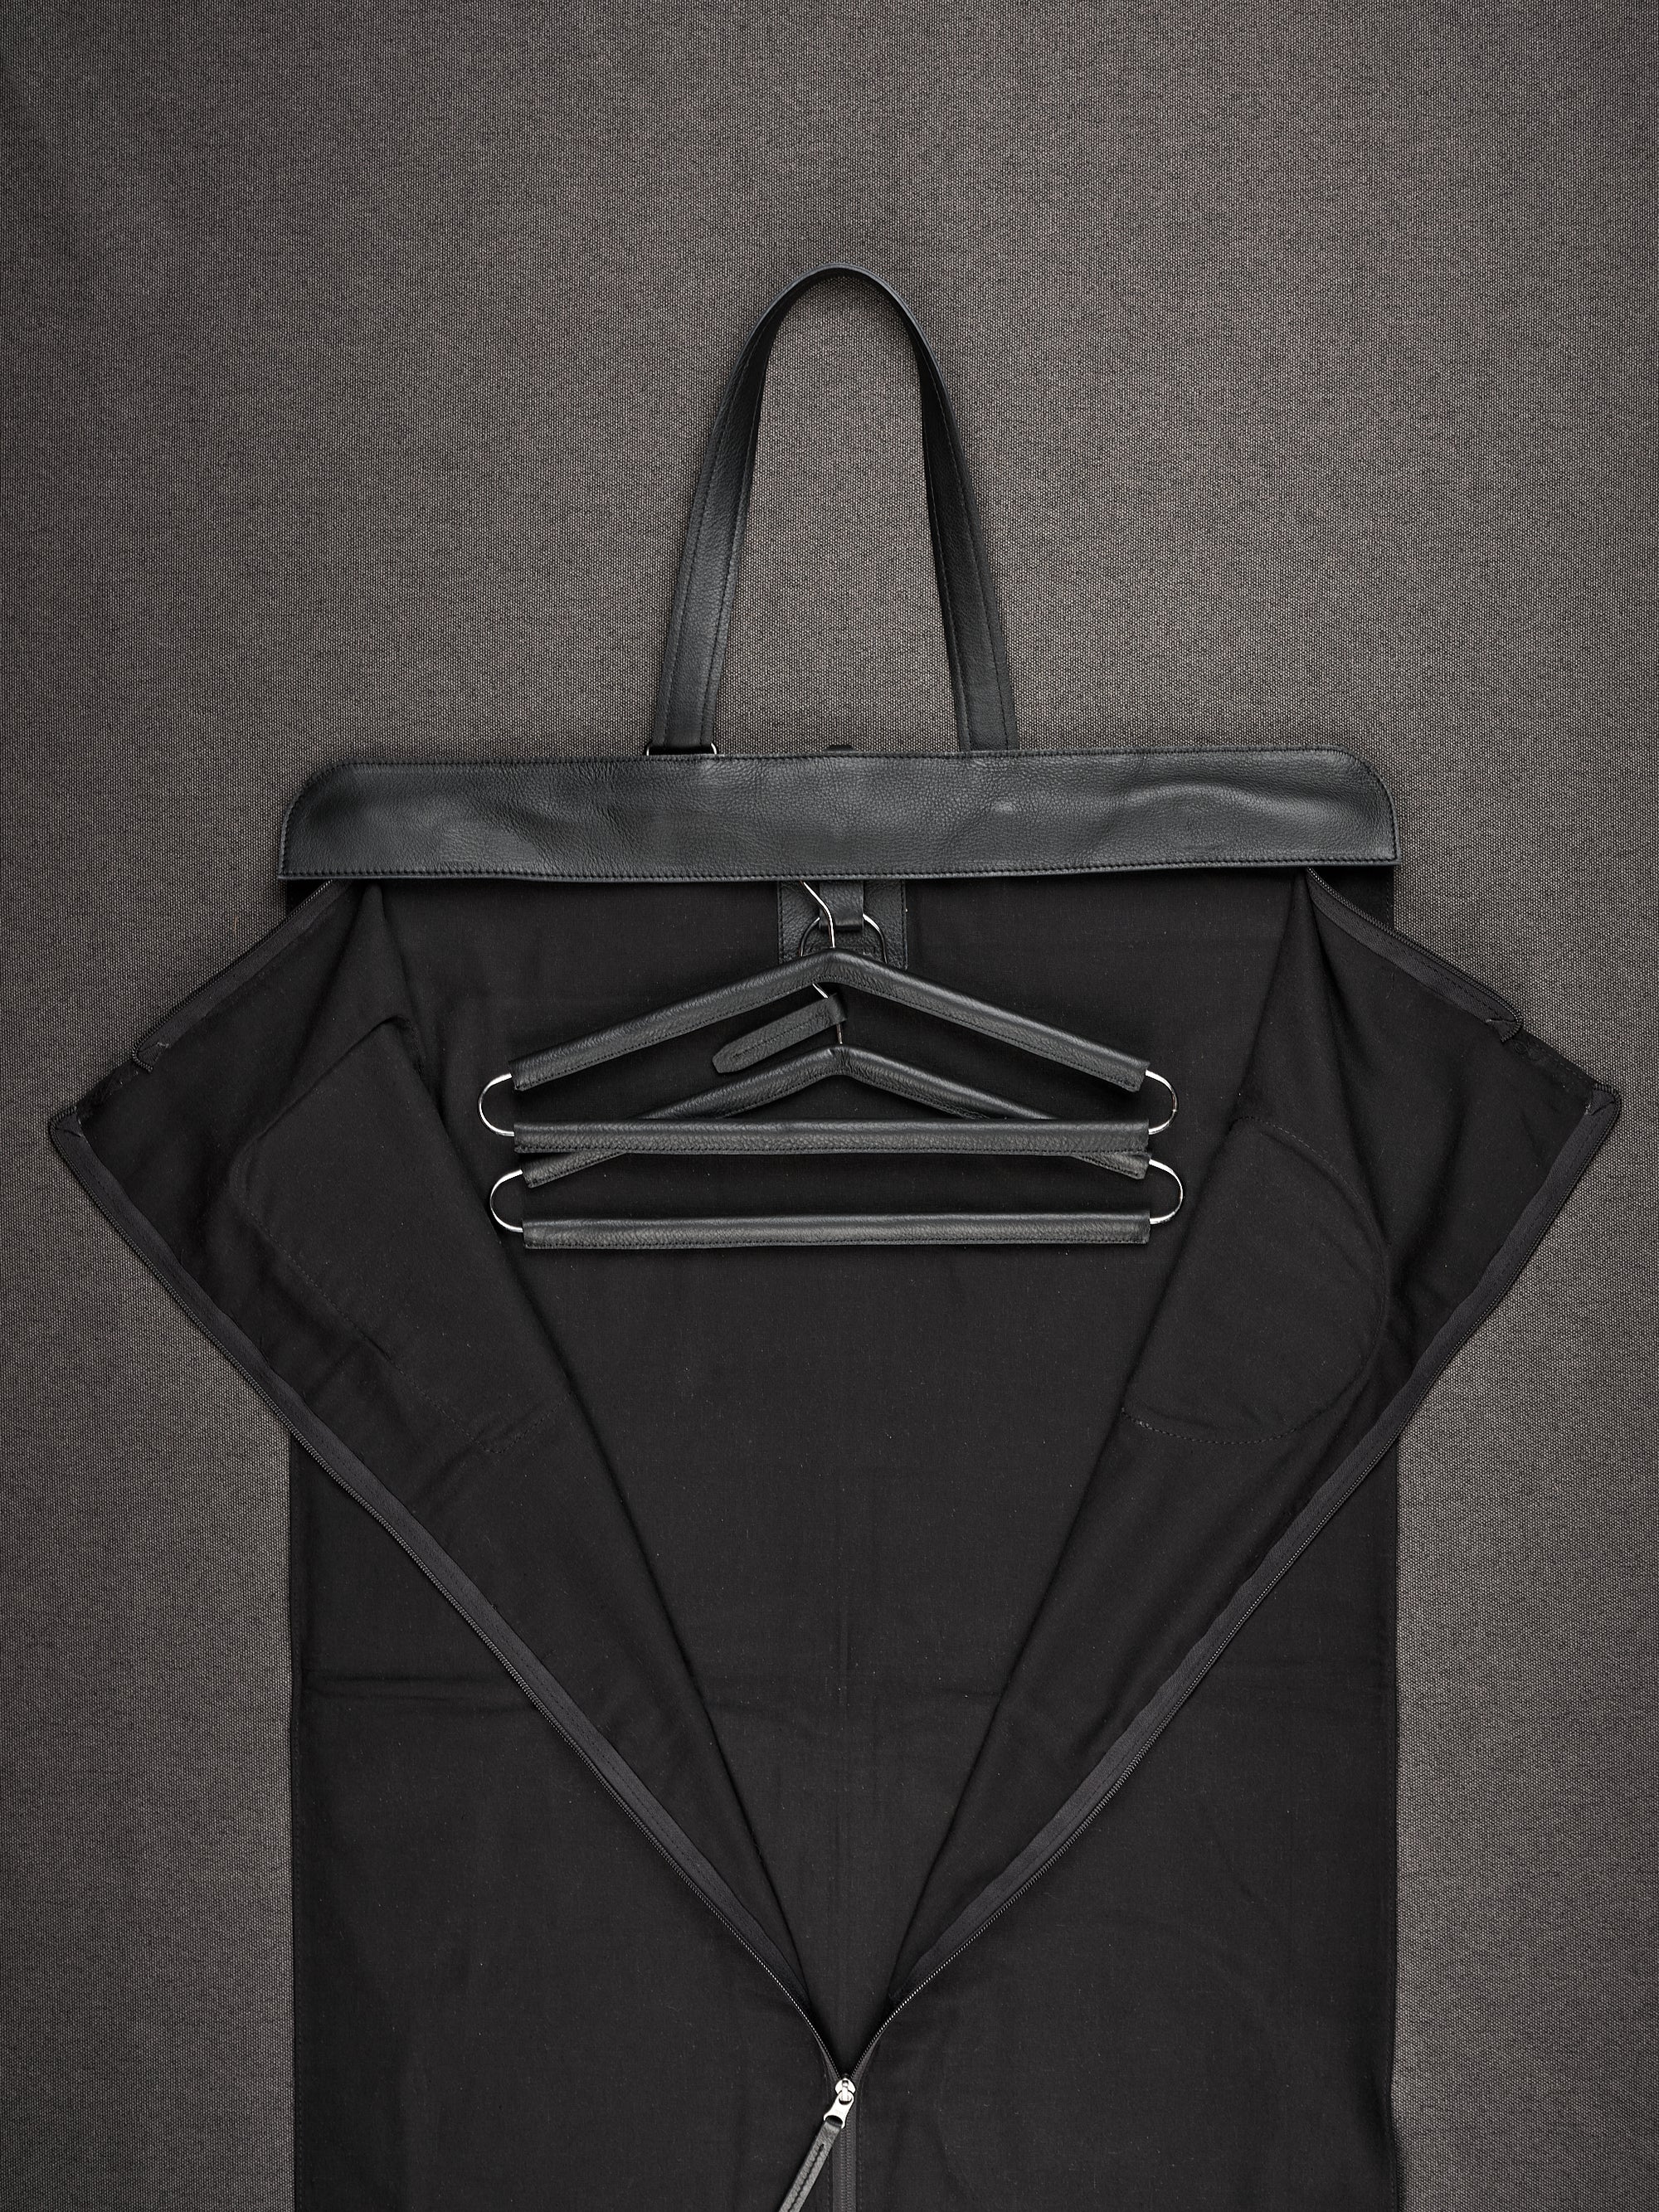 Mens Suit Garment Bag Black by Capra Leather